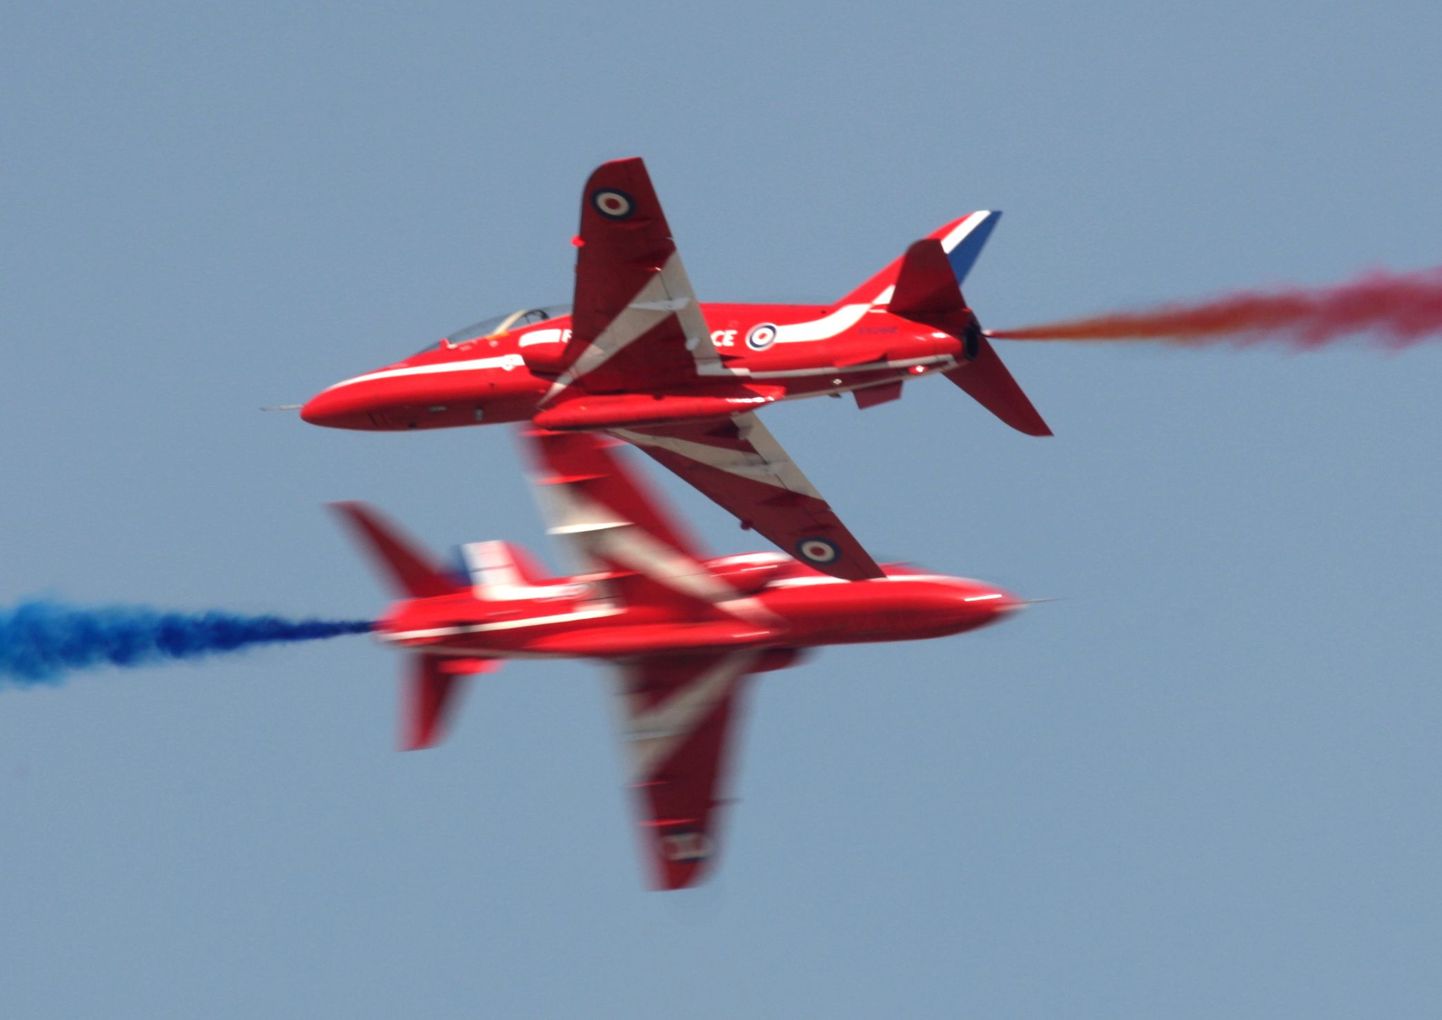 Показательный полет пилотажной группы Red Arrows в Дубае. Иллюстративное фото.